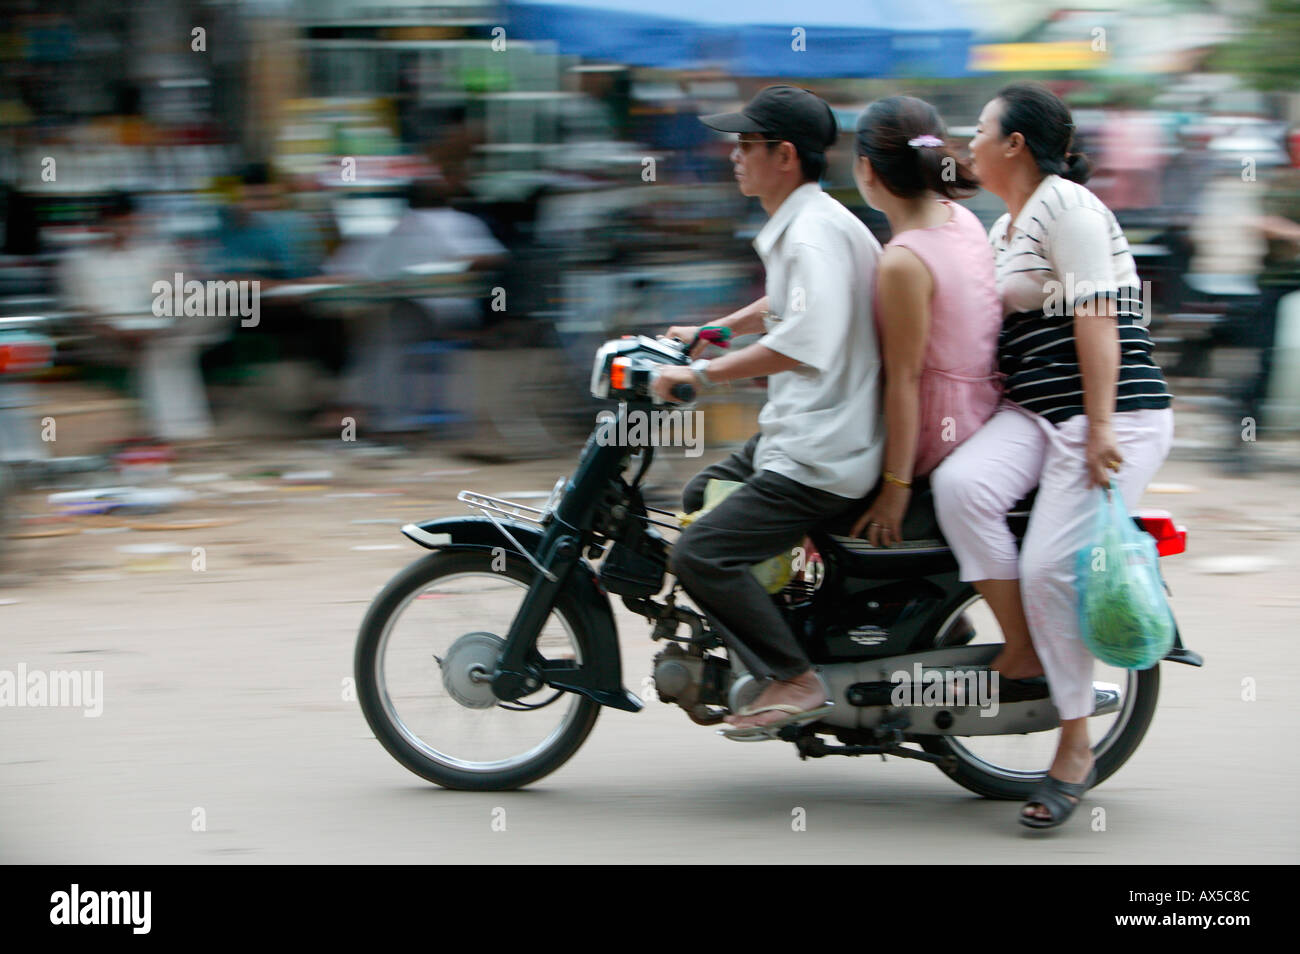 Menschen auf dem Motorrad Phnom Penh Kambodscha Asien Stockfoto